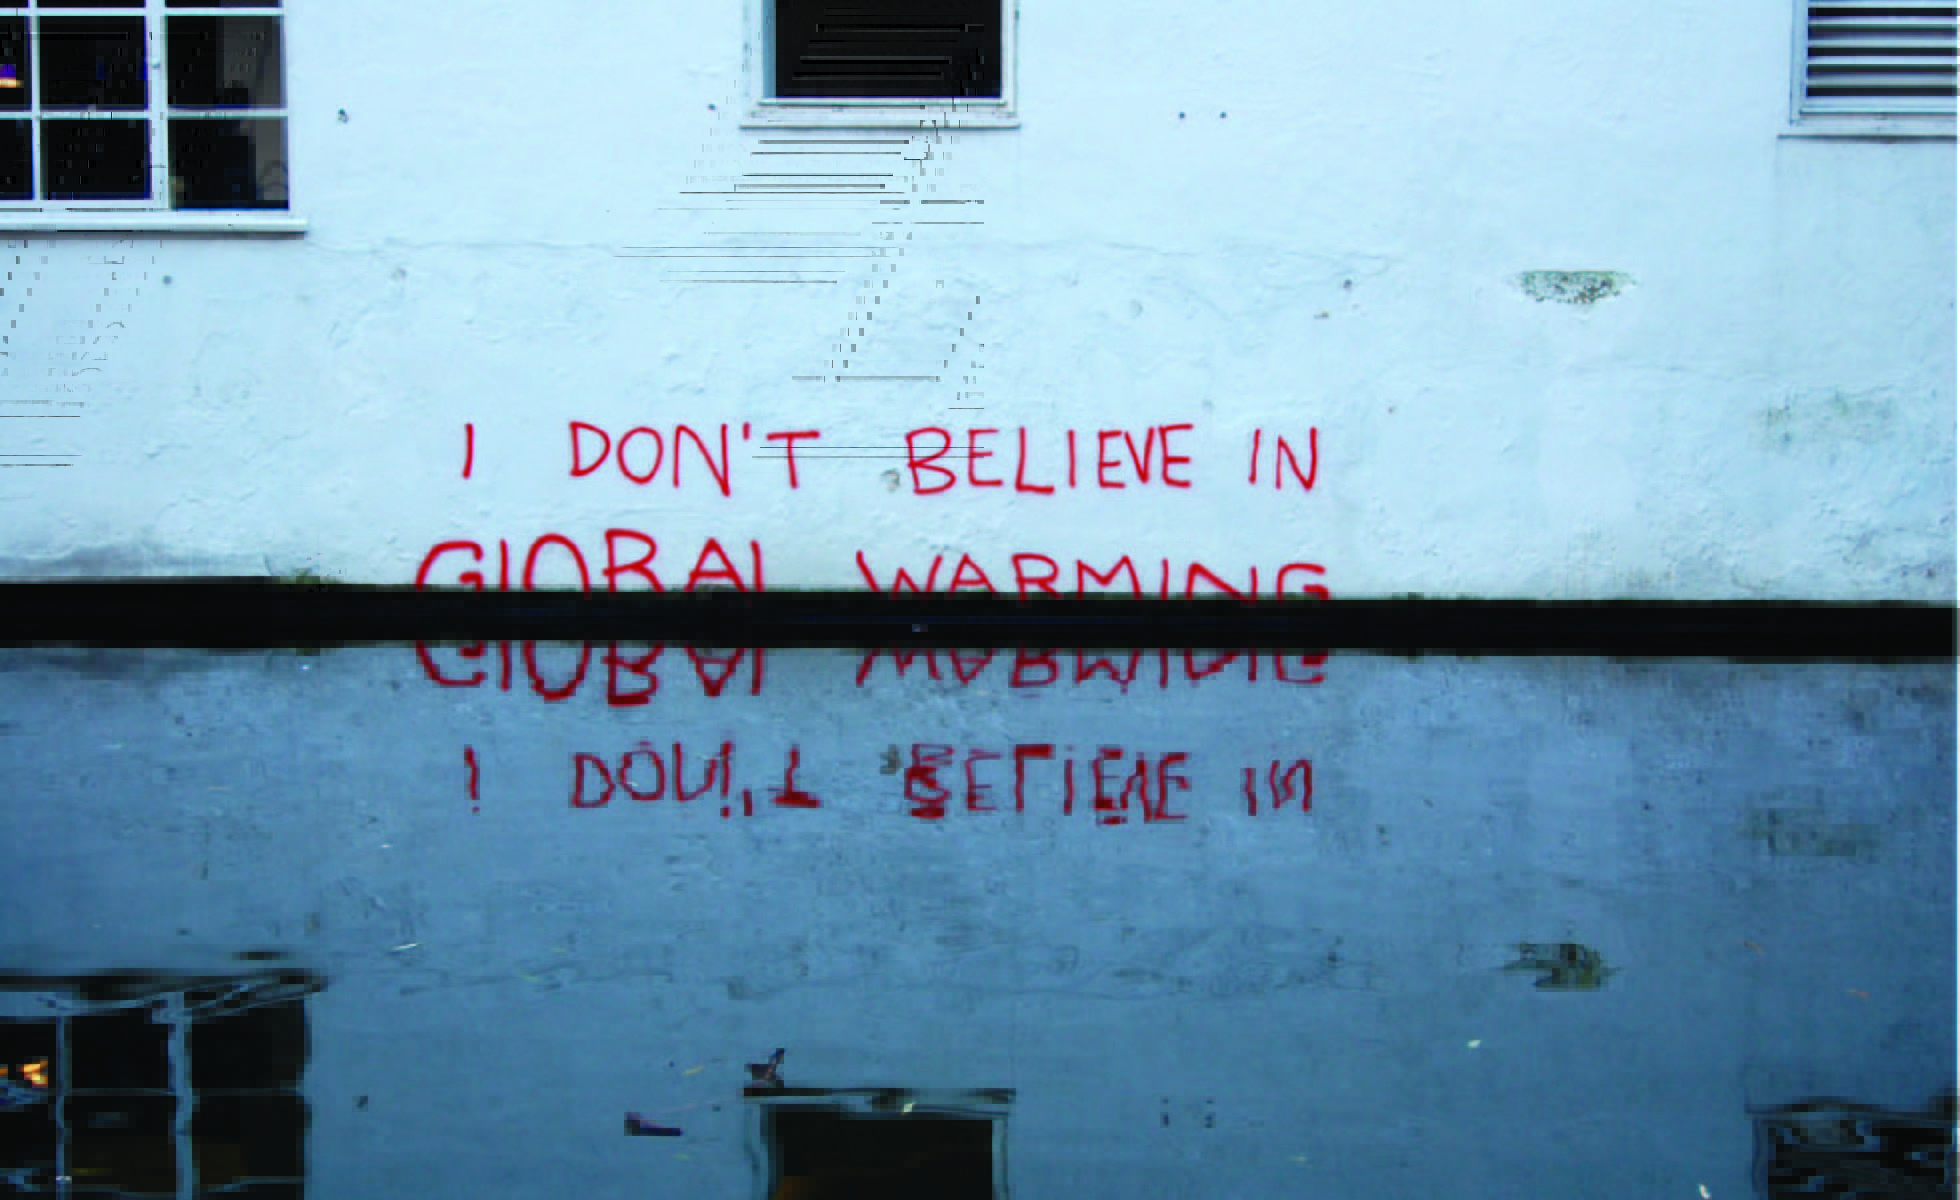 Oeuvre de Banksy sur le réchauffement climatique